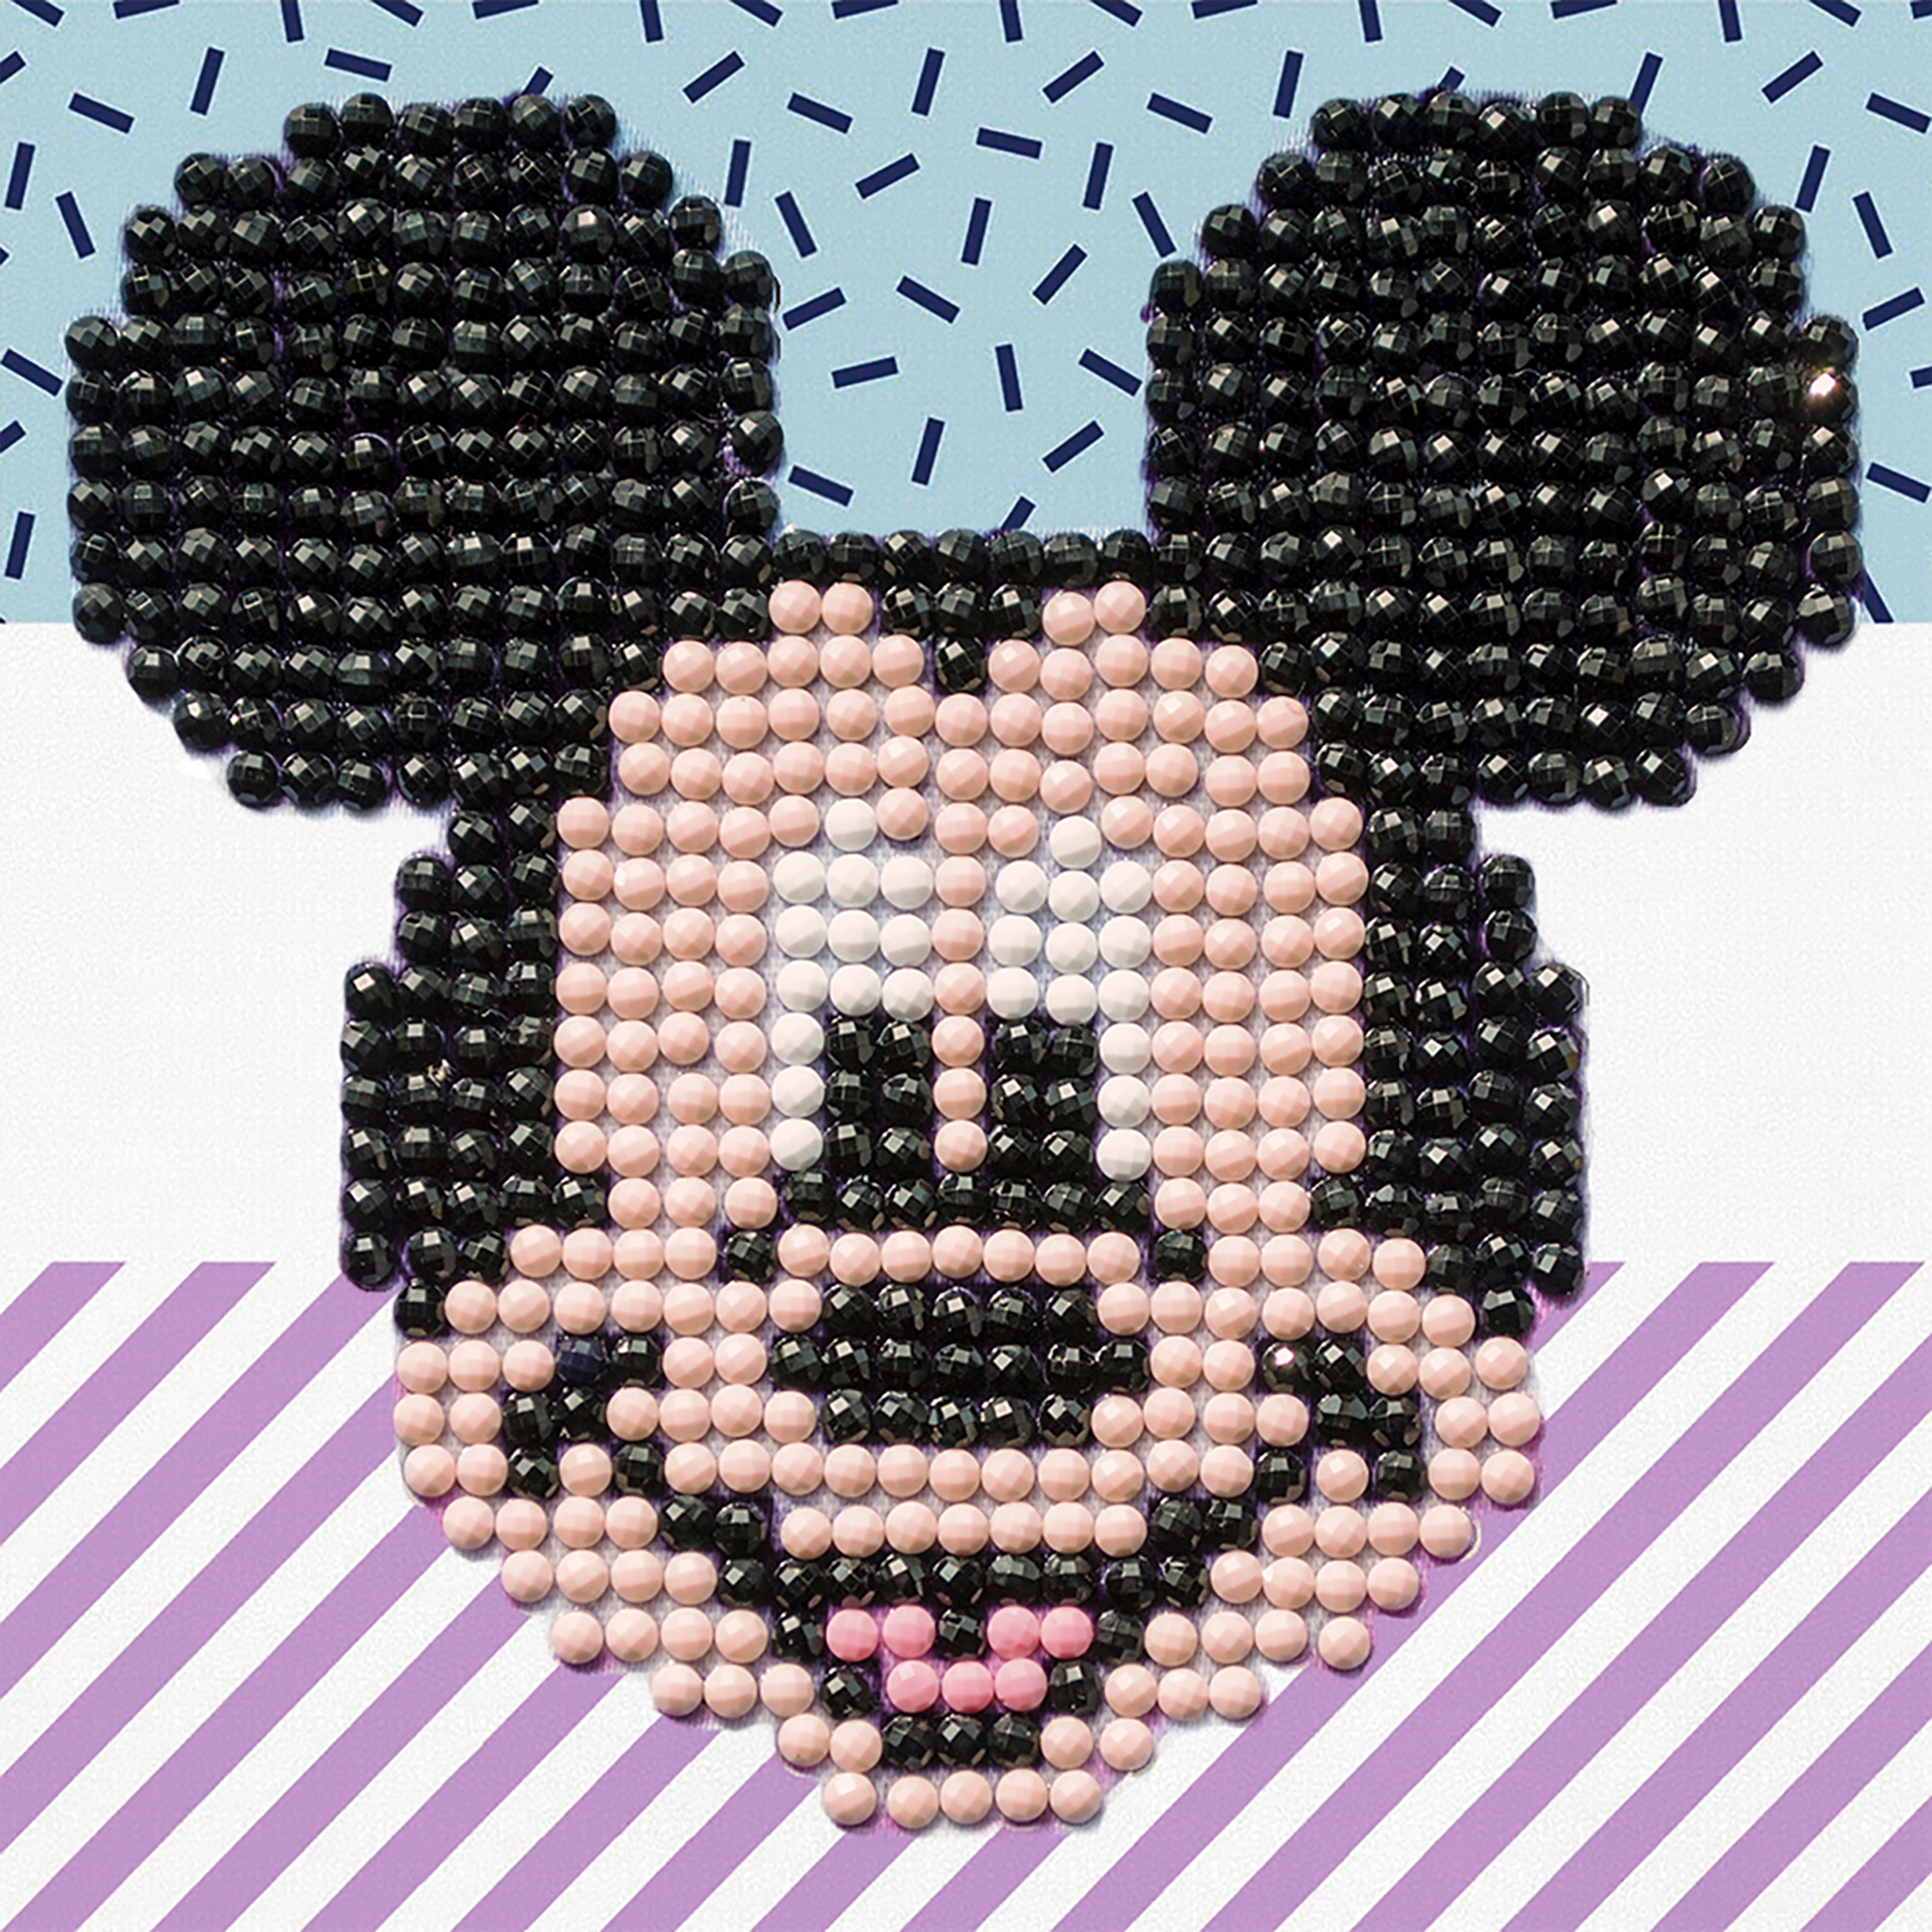 Mickey Mouse Diamond Painting